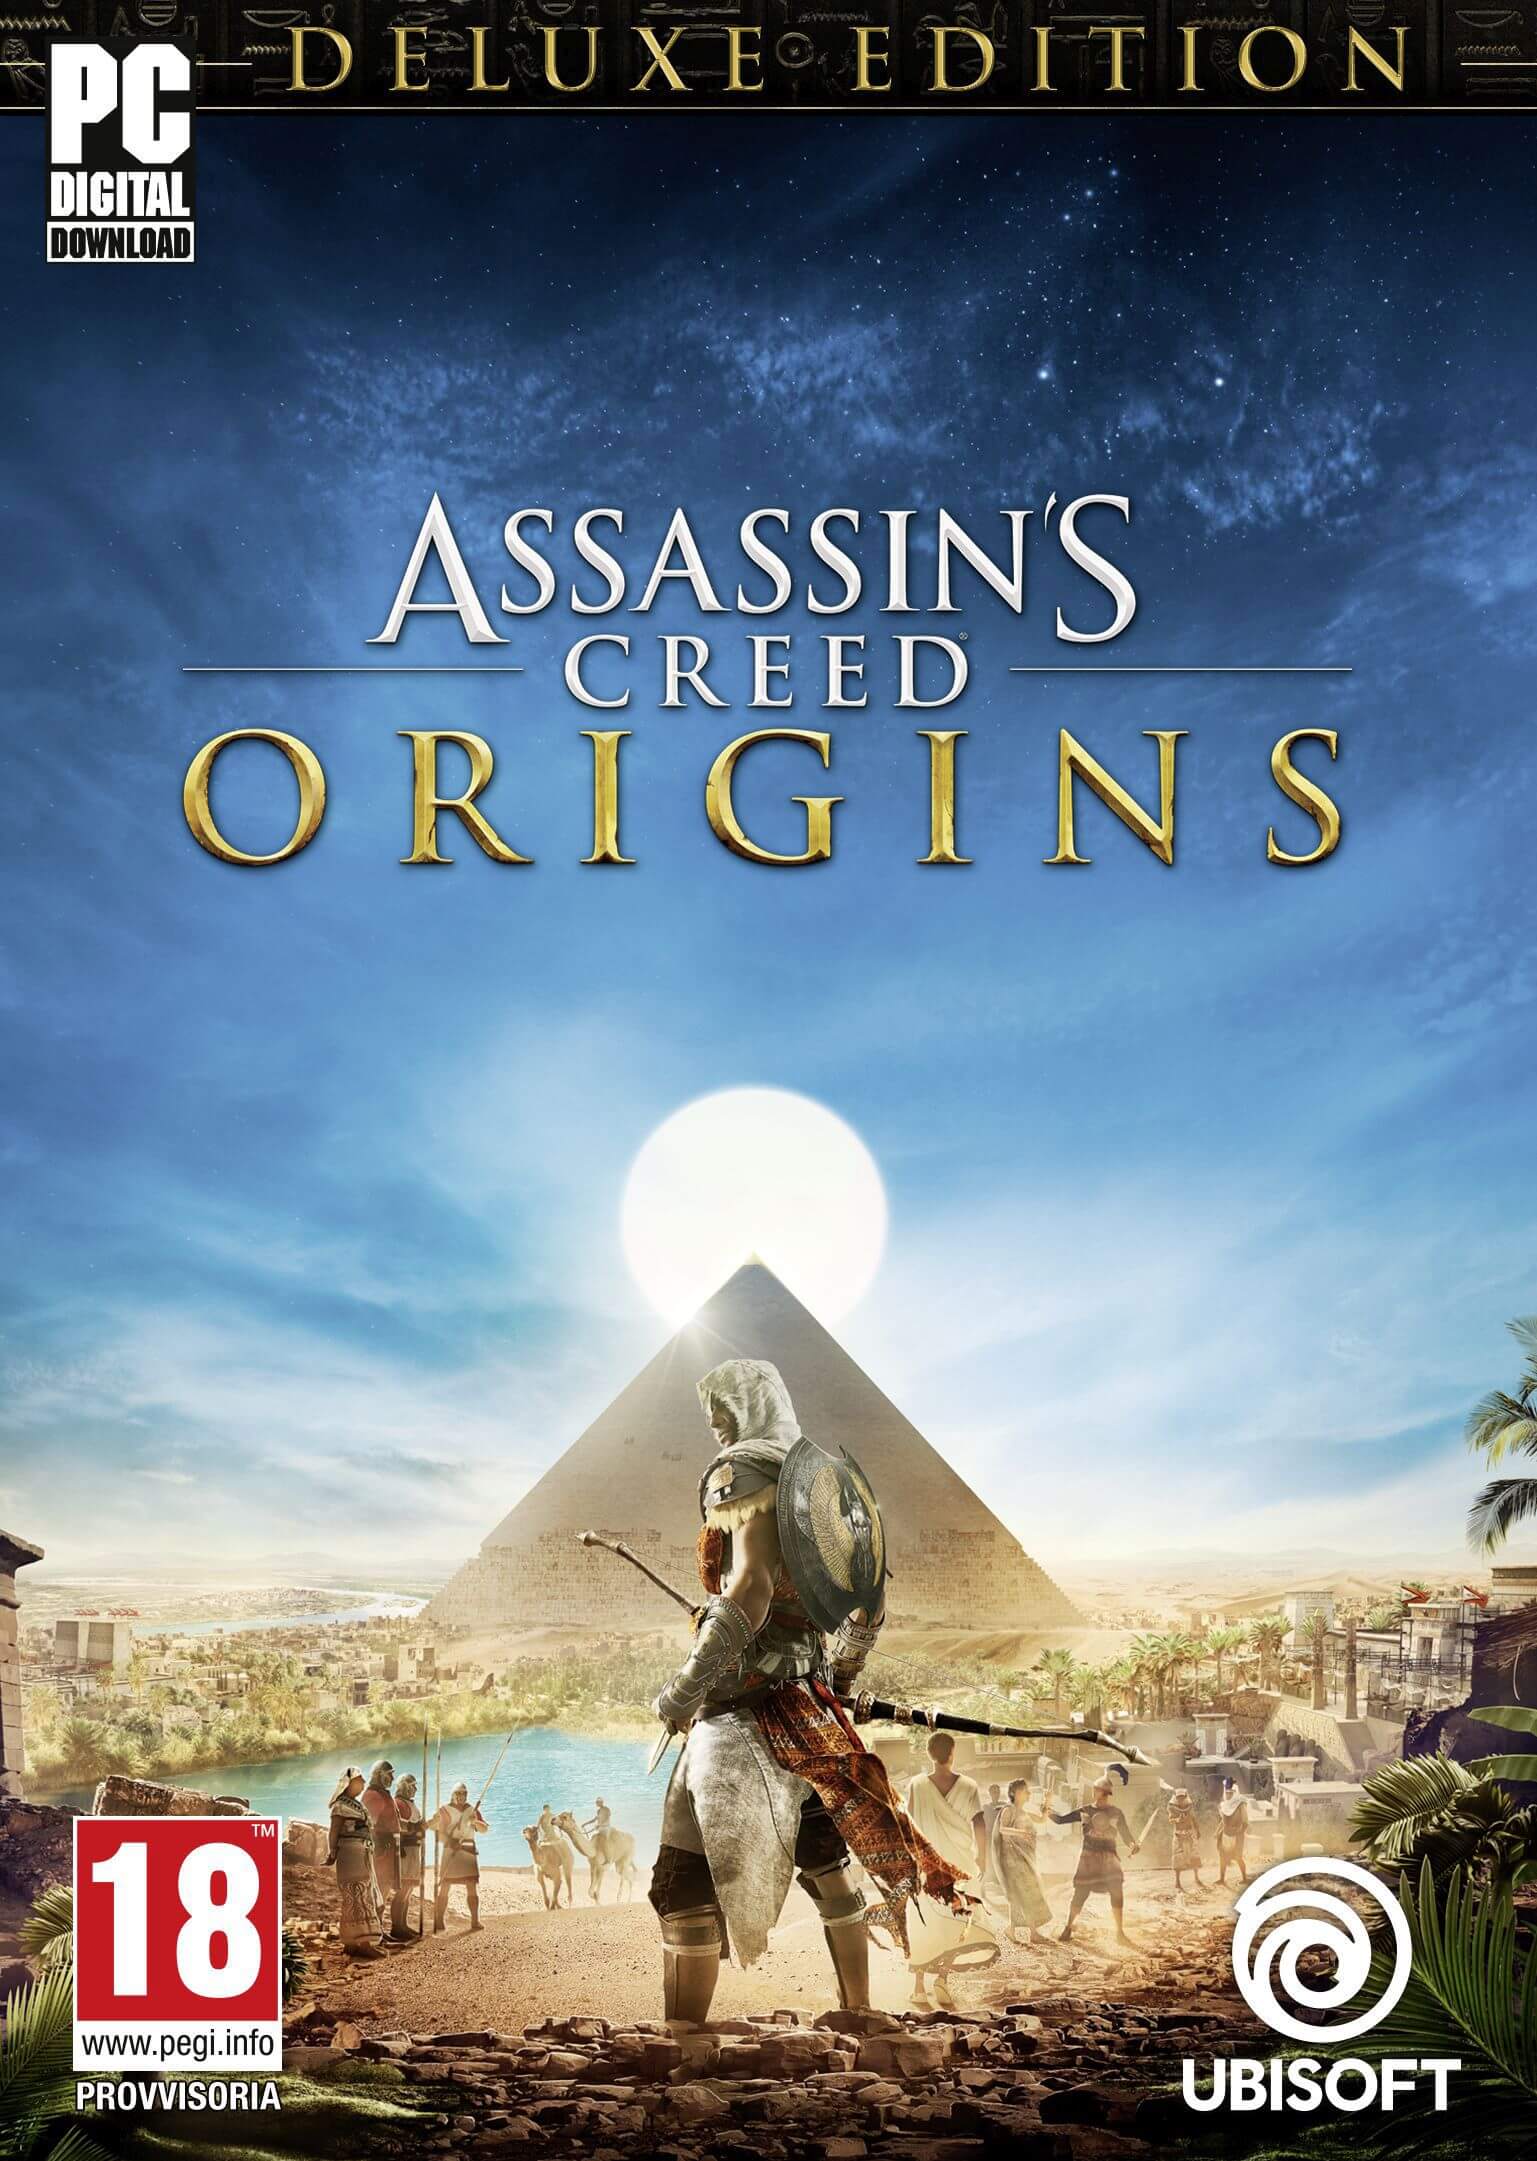 jaquette reduite de Assassin's Creed Origins sur PC